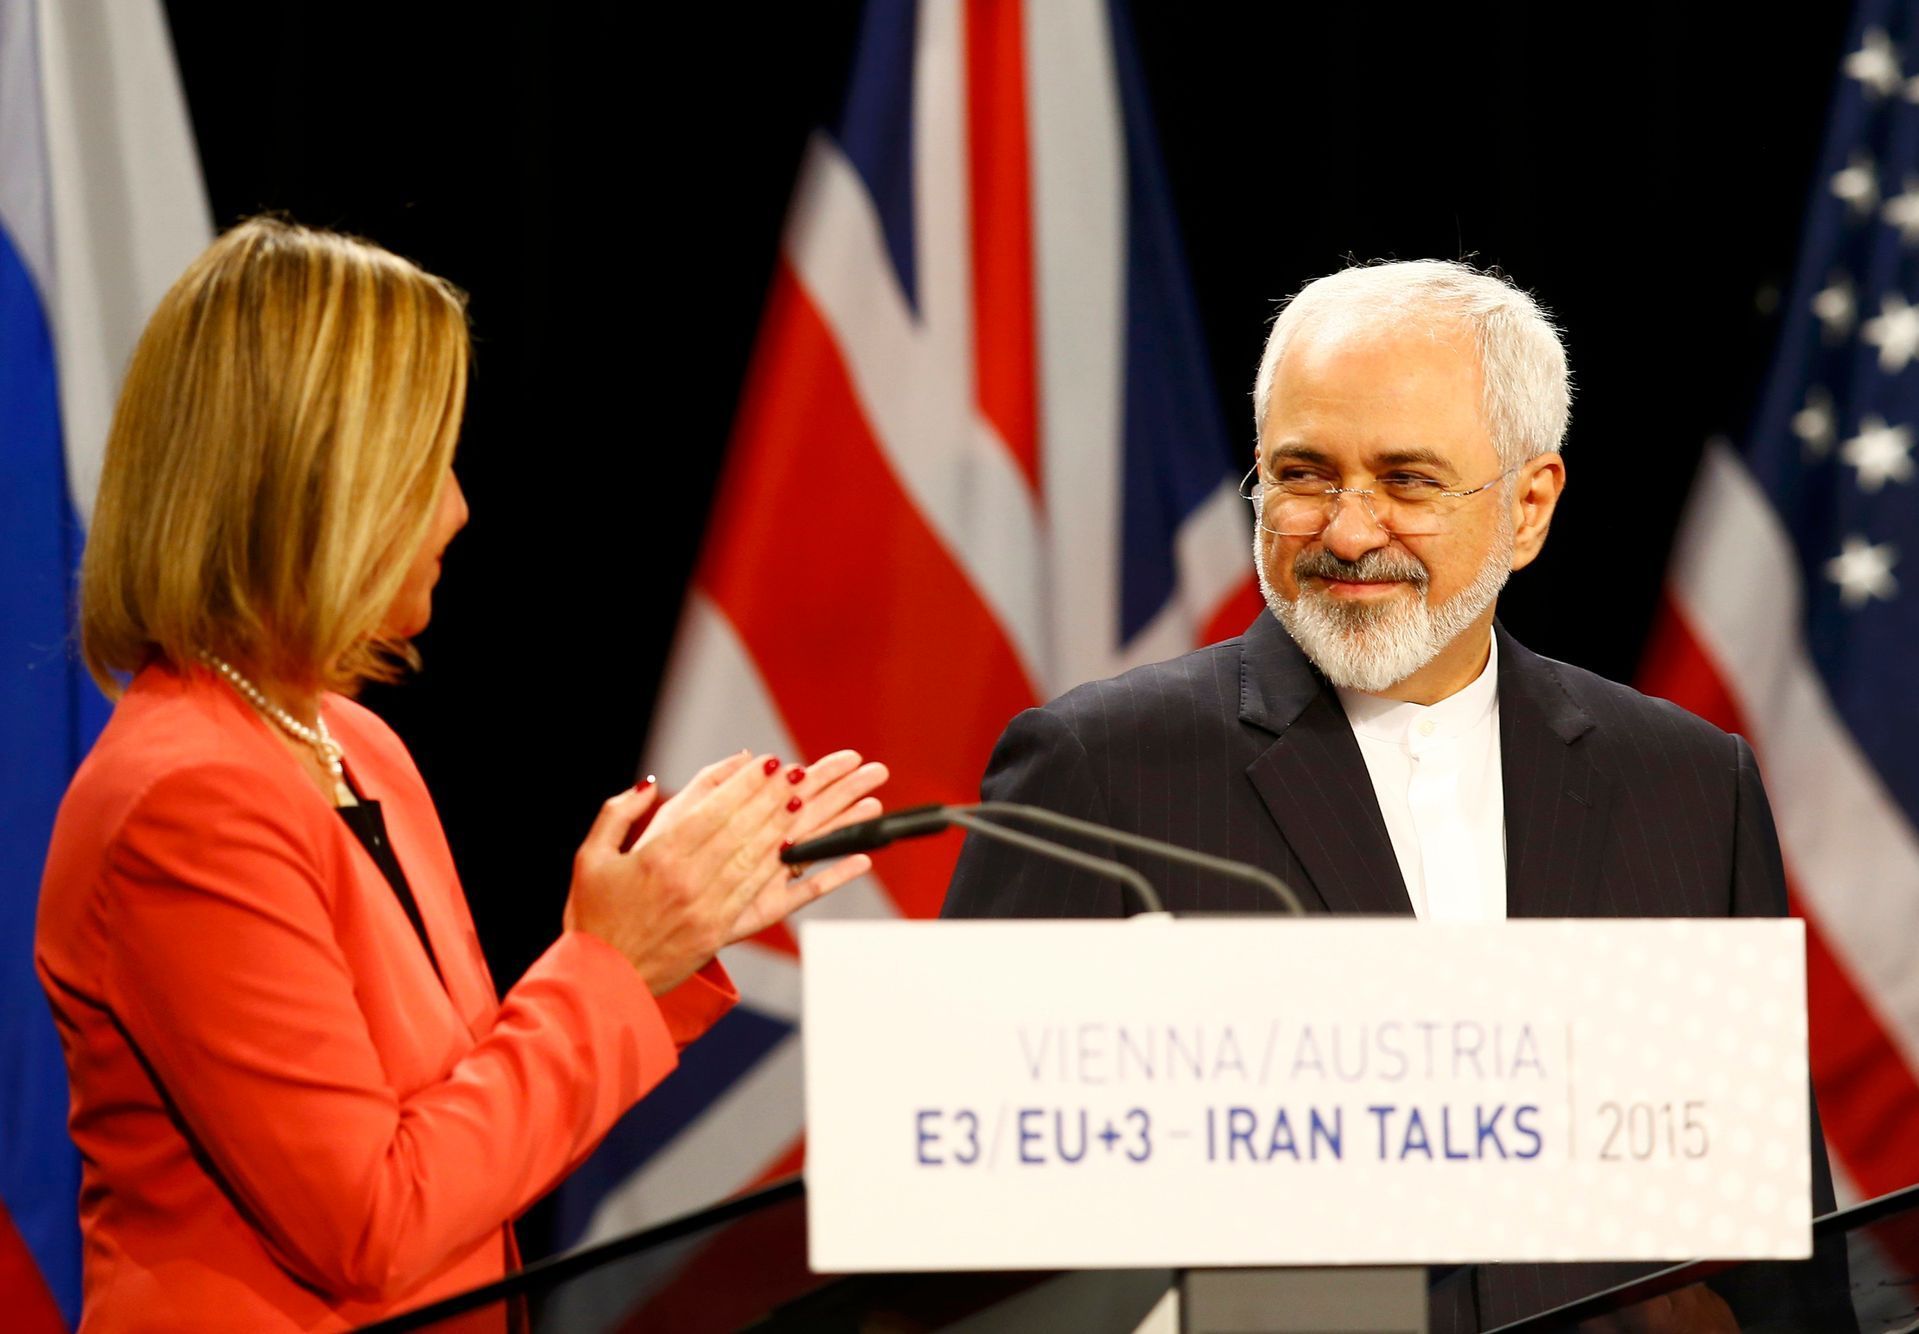 Dohoda s Íránem